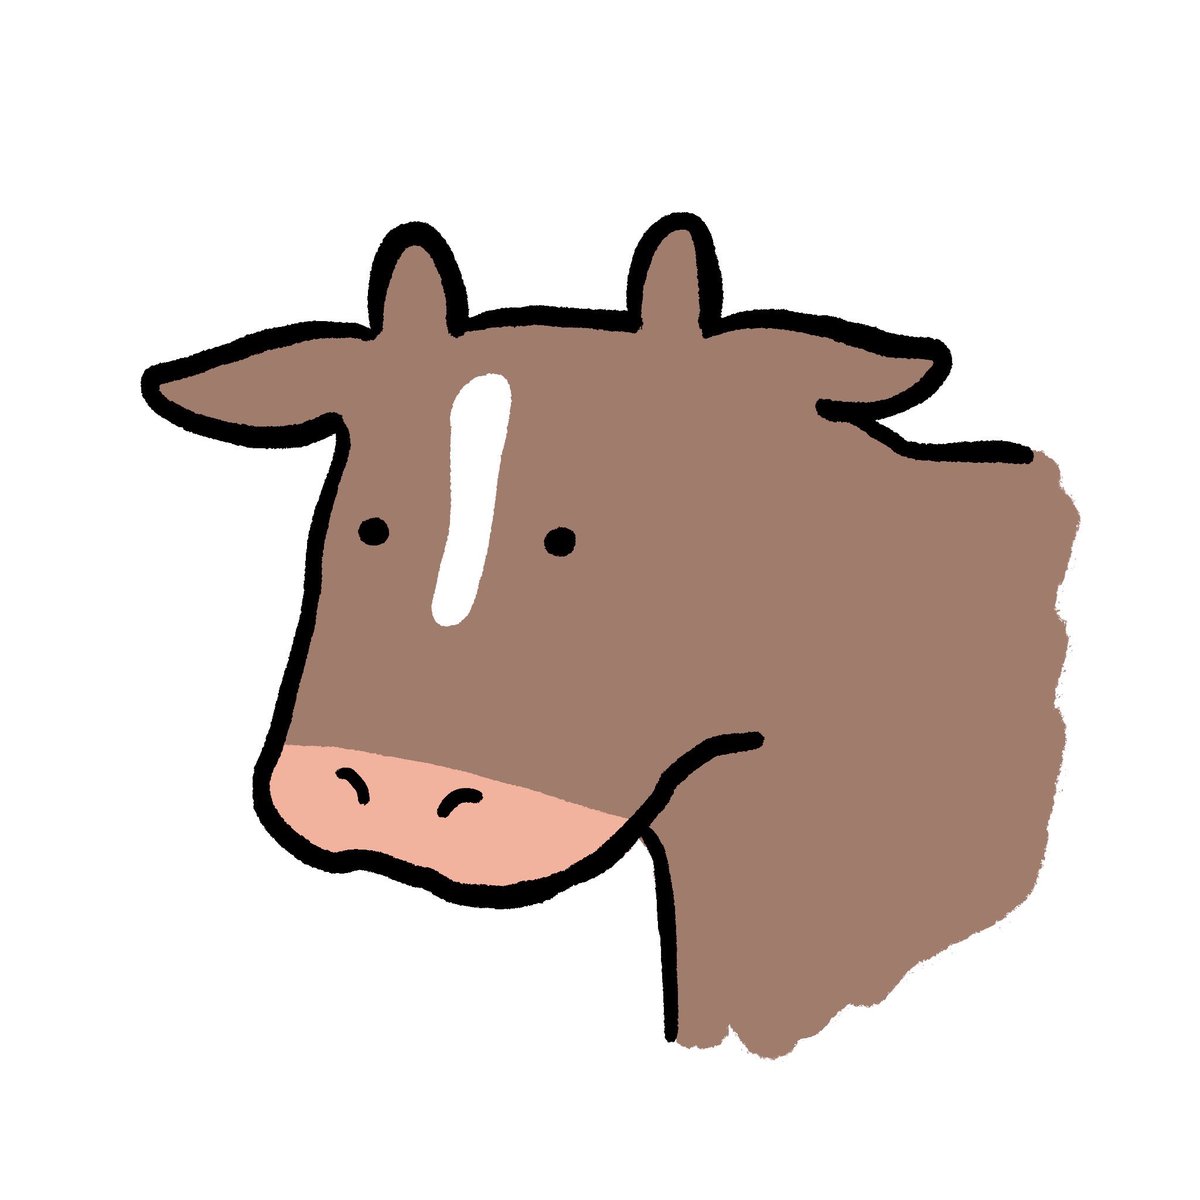 「 一般牛でよければ…! 」|うしさんのイラスト